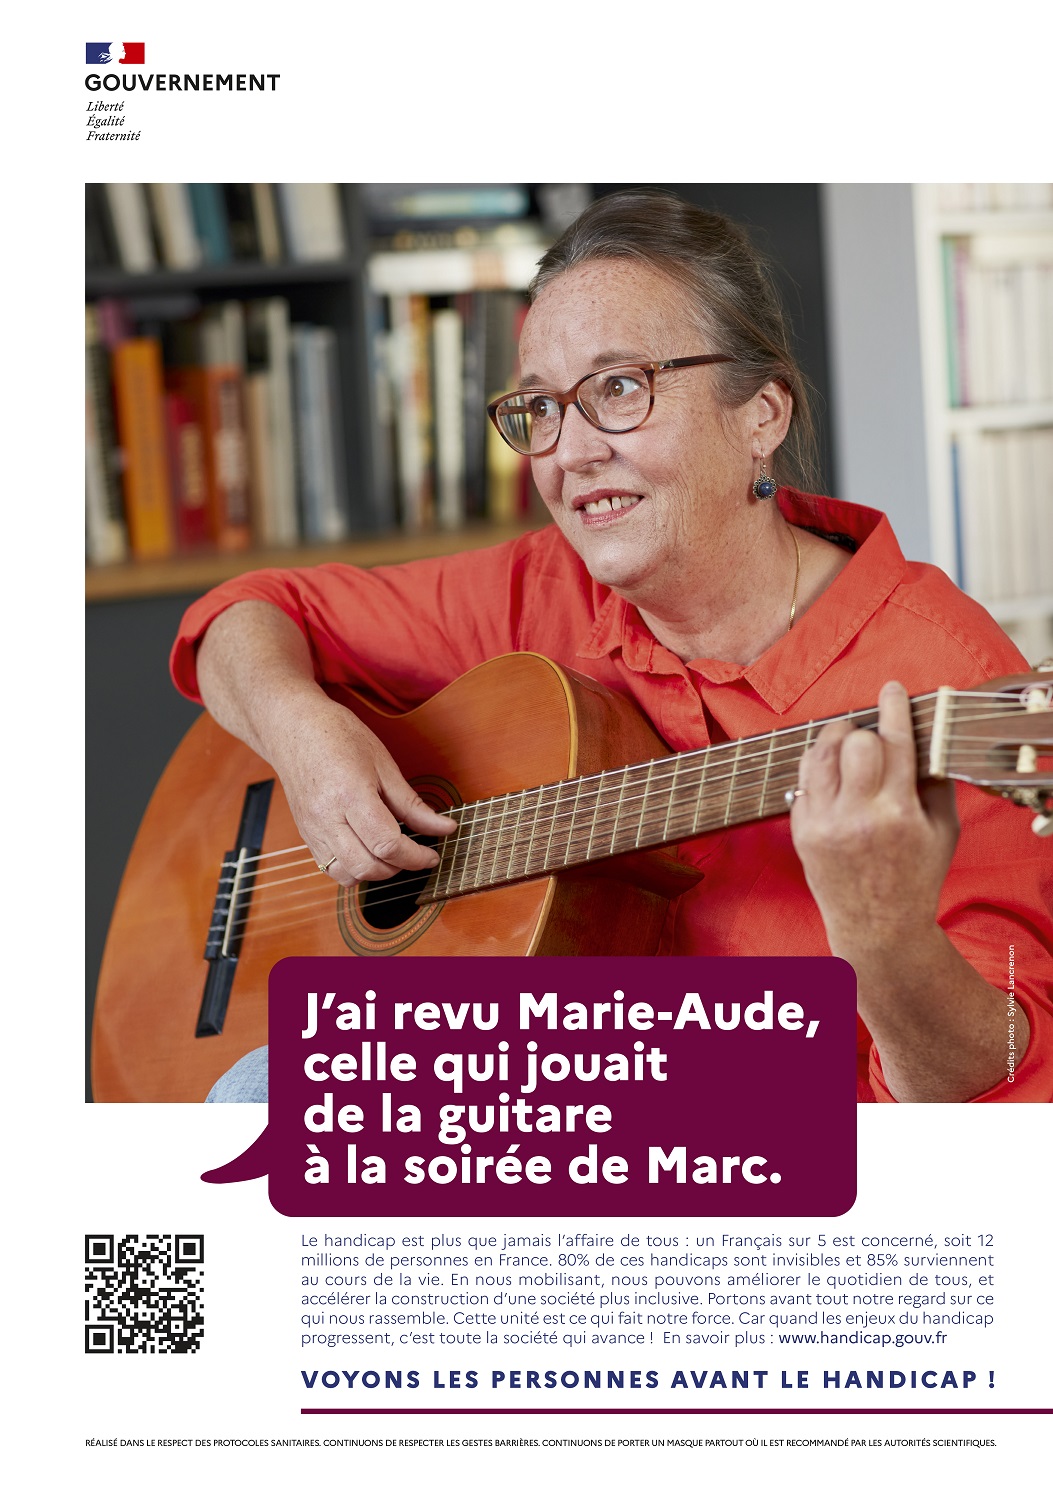 J'ai revu Marie-Aude, celle qui jouait de la guitare à la soirée de Marc. Voyons les personnes avant le handicap !